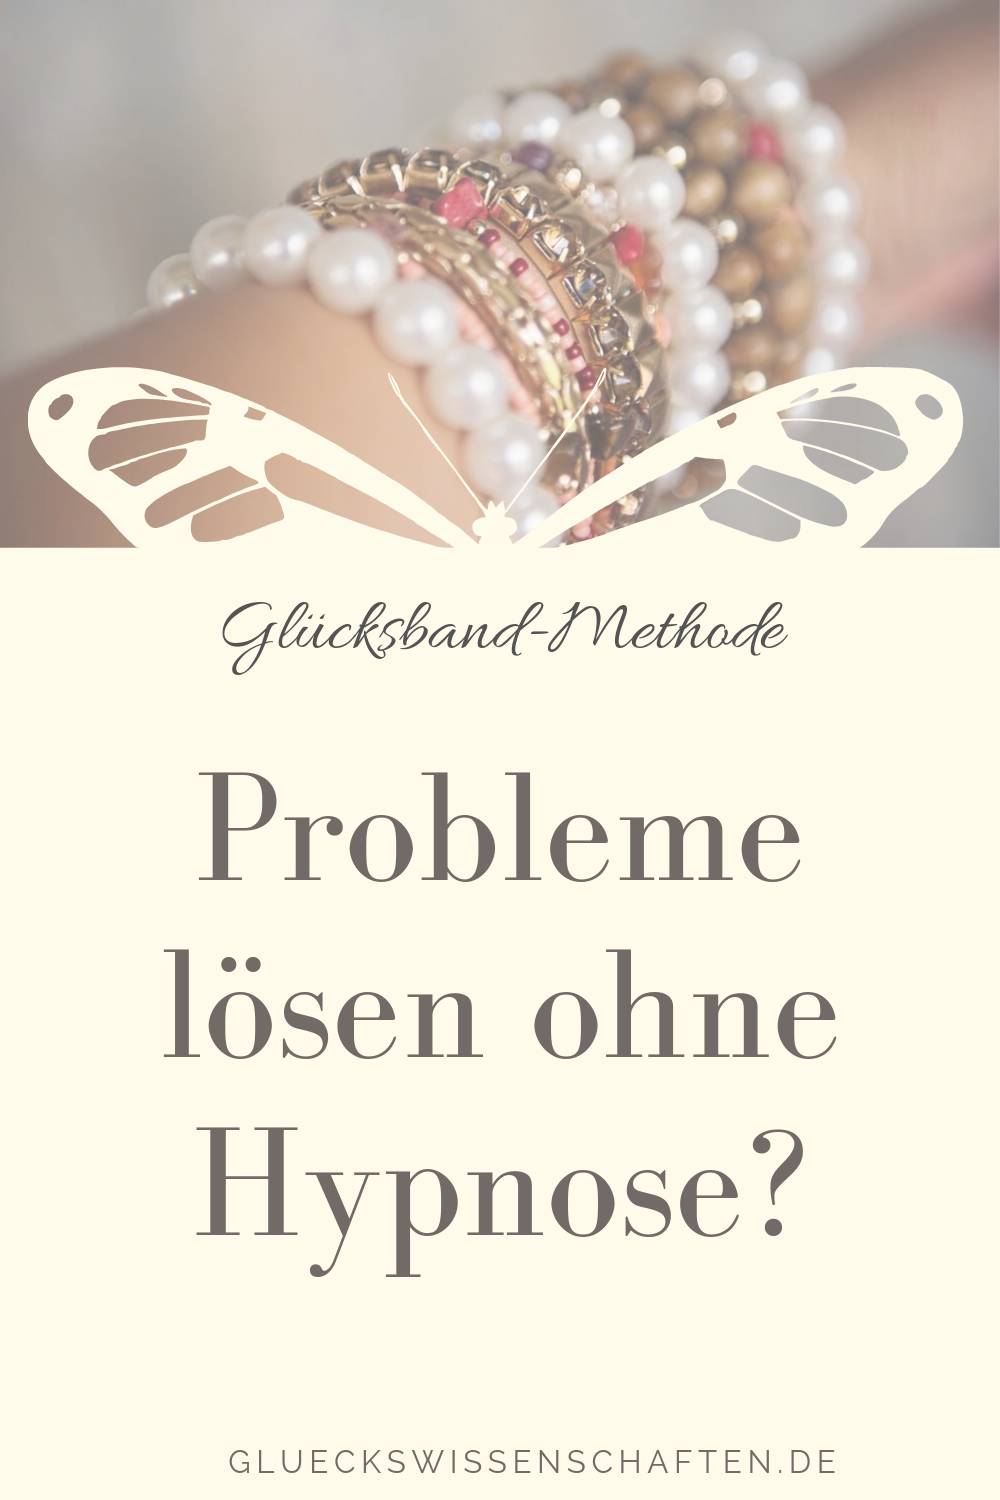 Glückswissenschaften- Glücksband-Methode - Probleme lösen ohne Hypnose